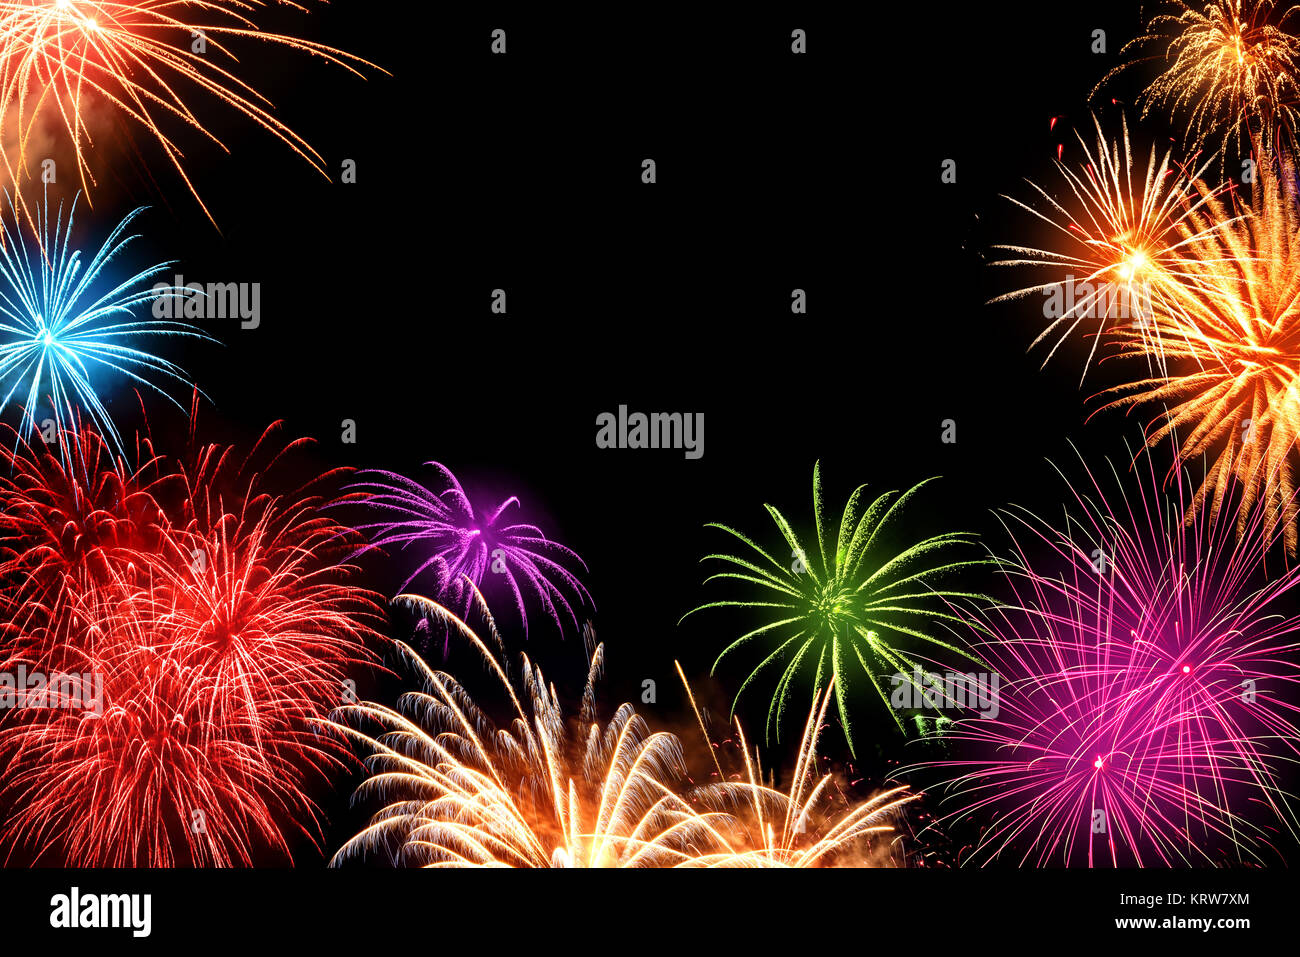 Multi-couleur magnifique fireworks comme une frontière sur fond noir, idéal pour le Nouvel An ou autres événements de célébration Banque D'Images